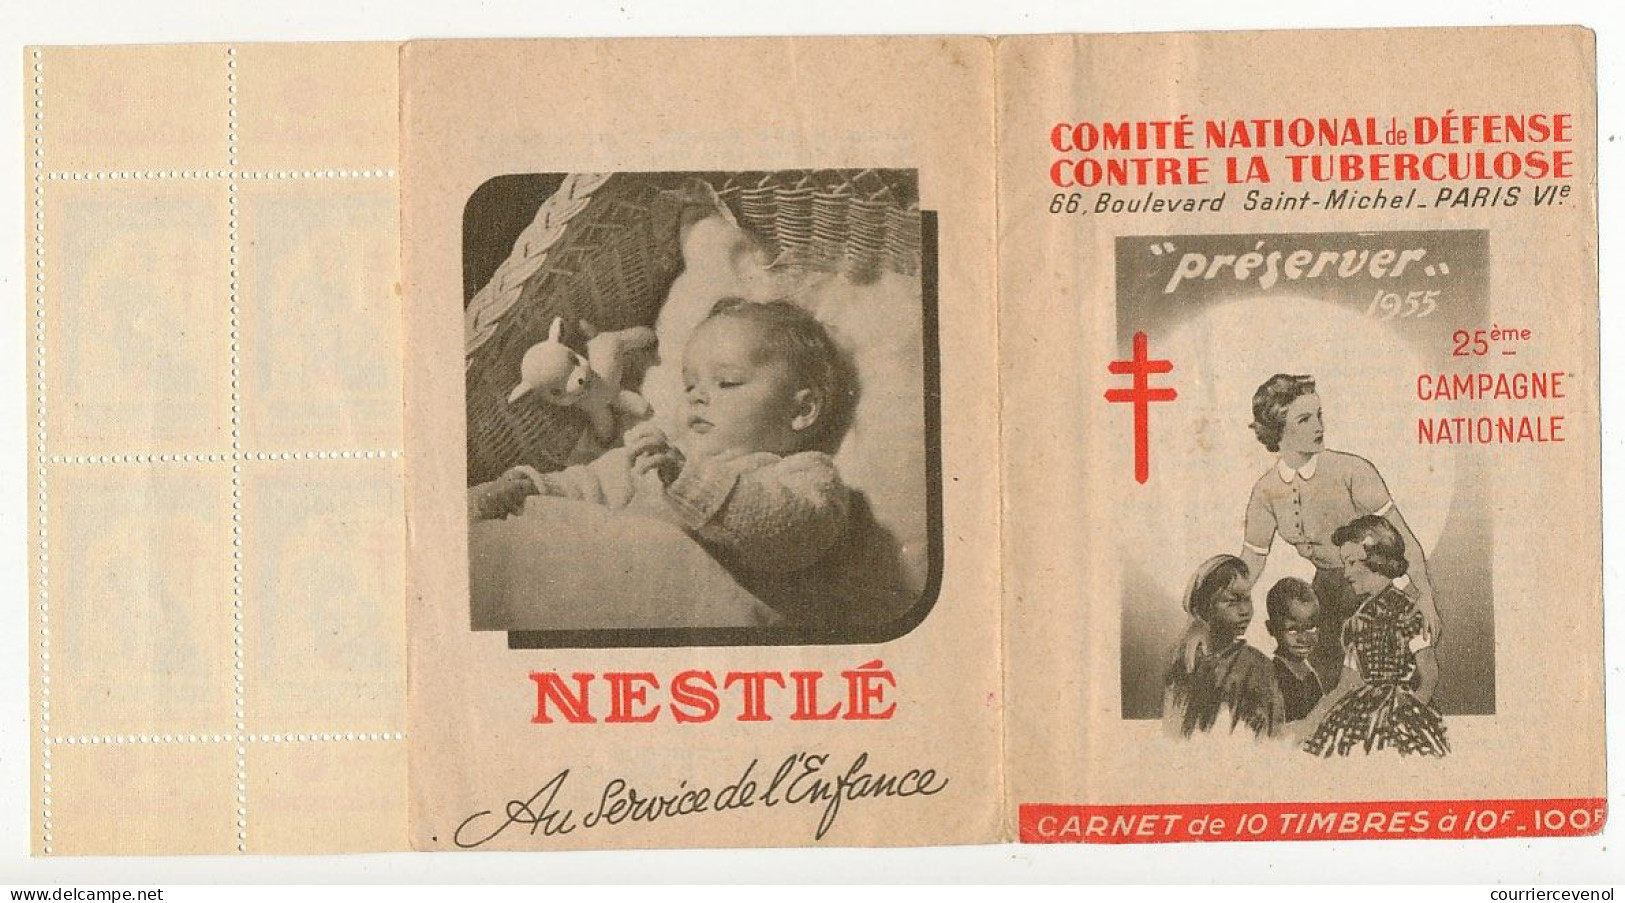 FRANCE - Carnet De 10 Vignettes Antituberculeuses 1955 - "Préserver" - Tuberkulose-Serien